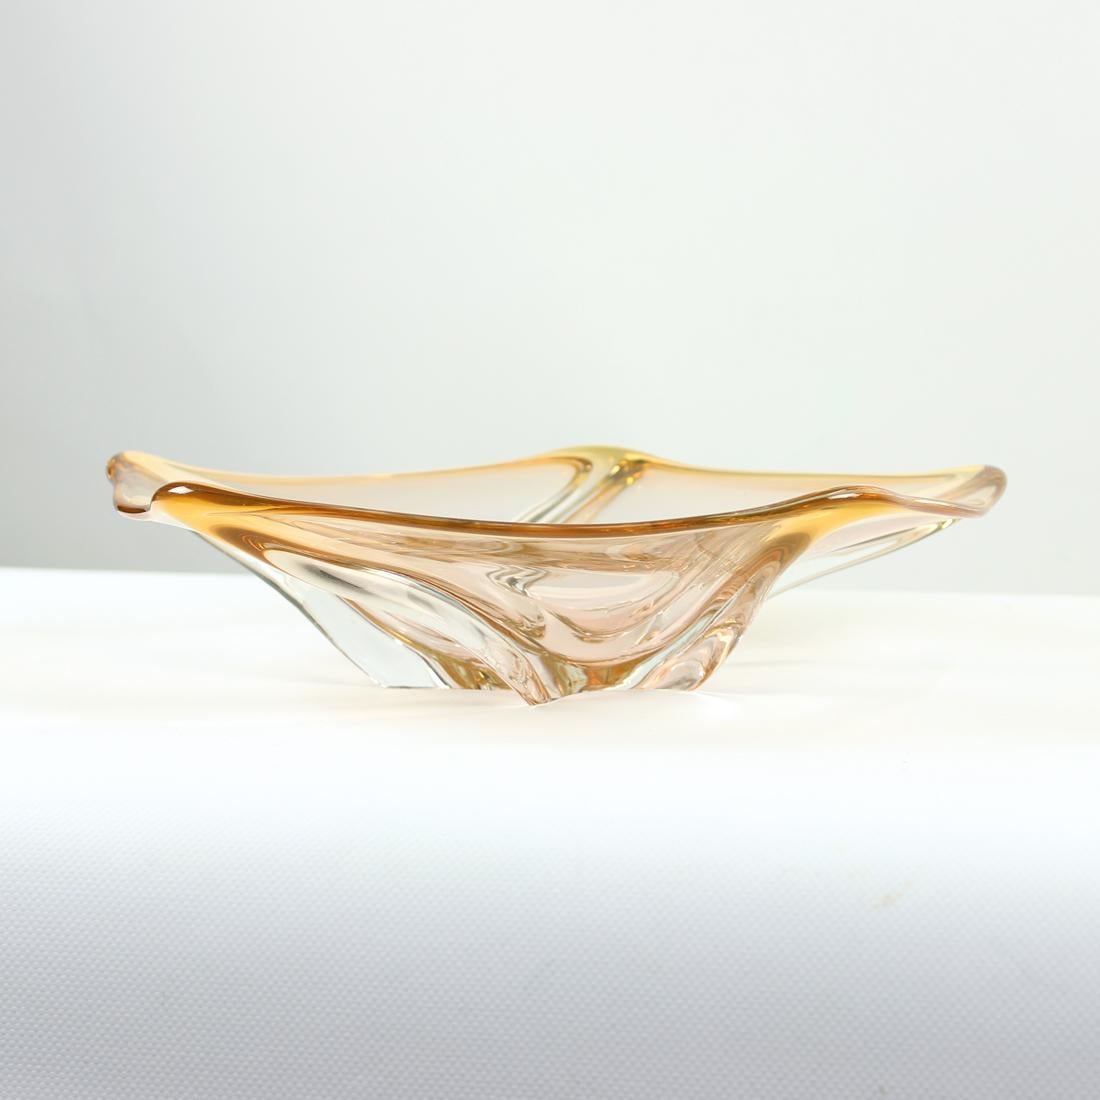 Mid-20th Century Art Glass Bowl By Frantisek Zemek For Sklarna Mstisov, 1960s For Sale